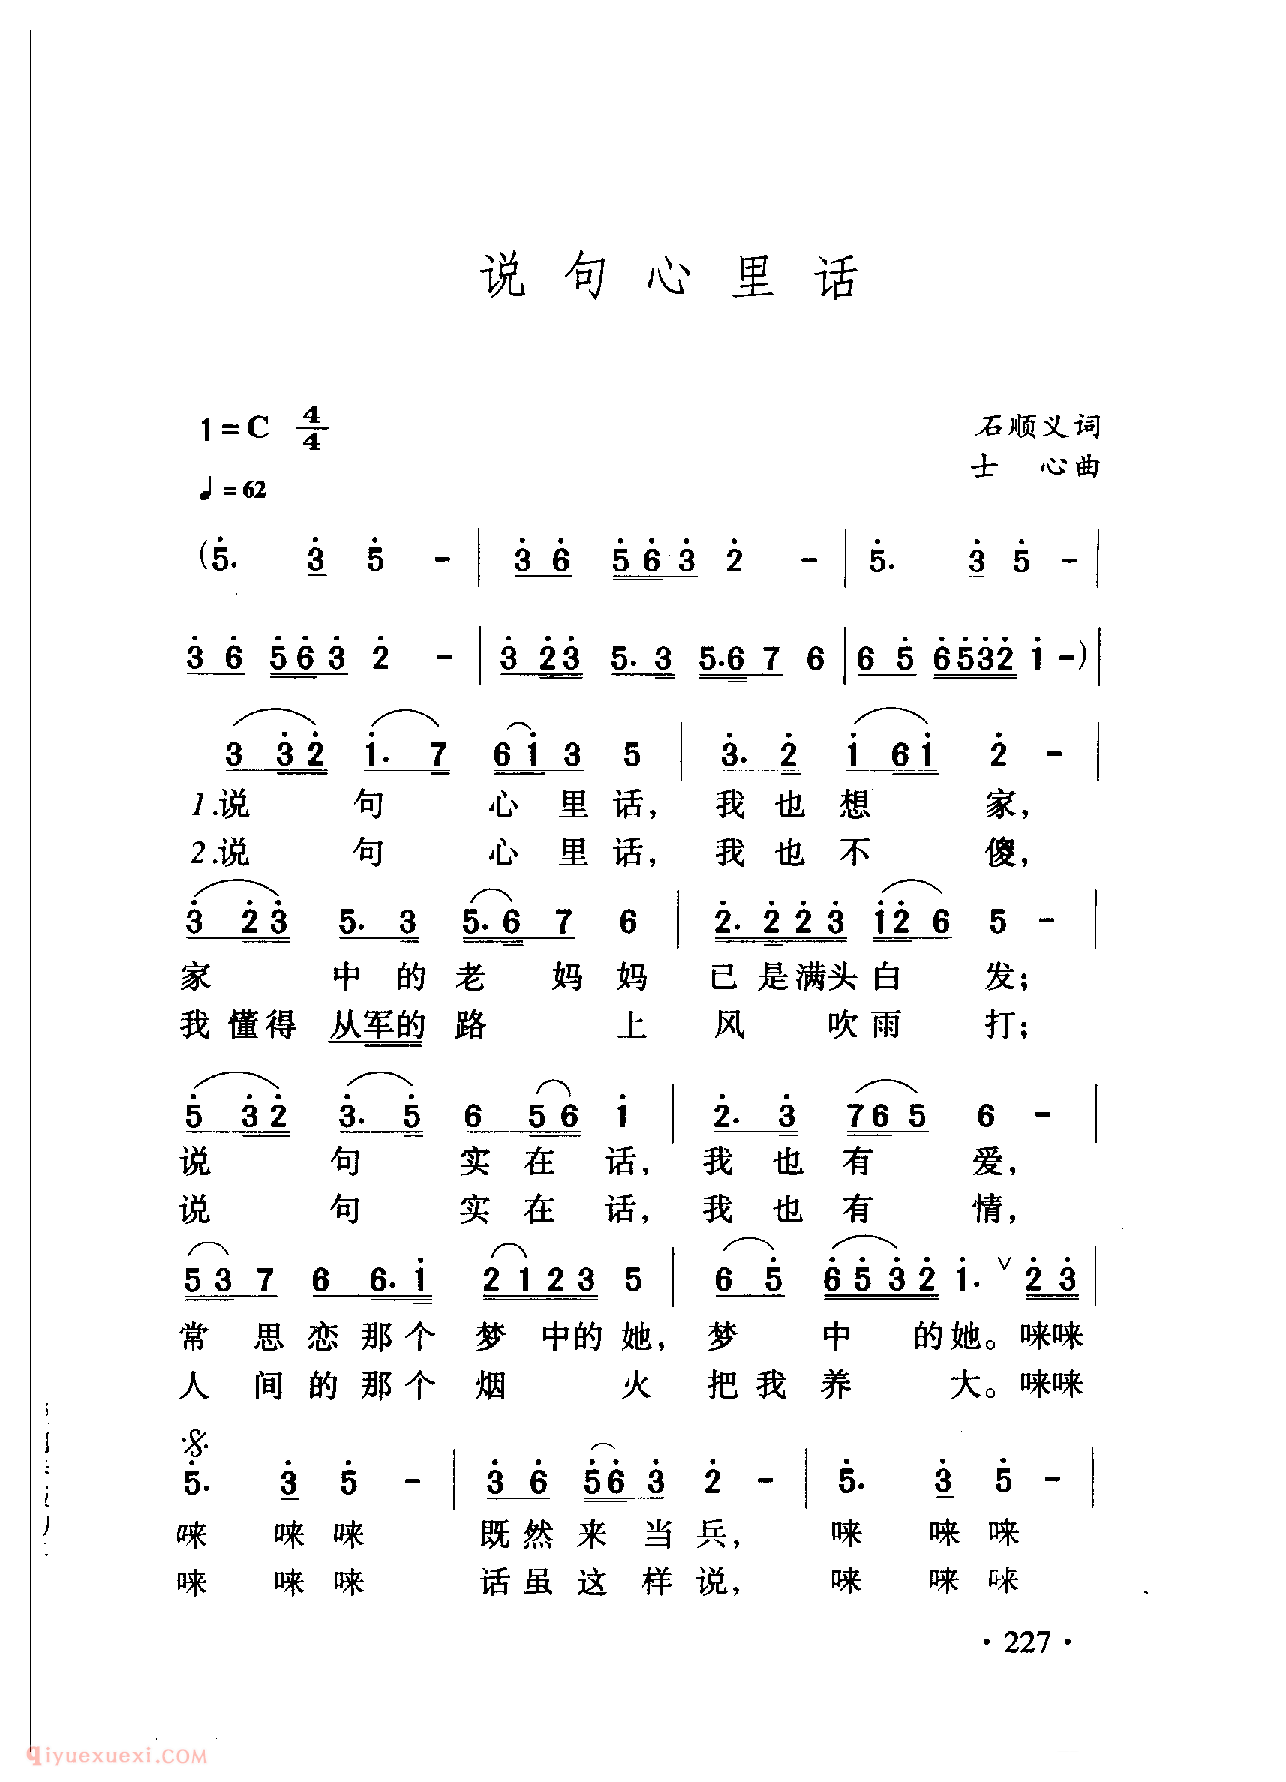 中国名歌[说句心里话]乐谱